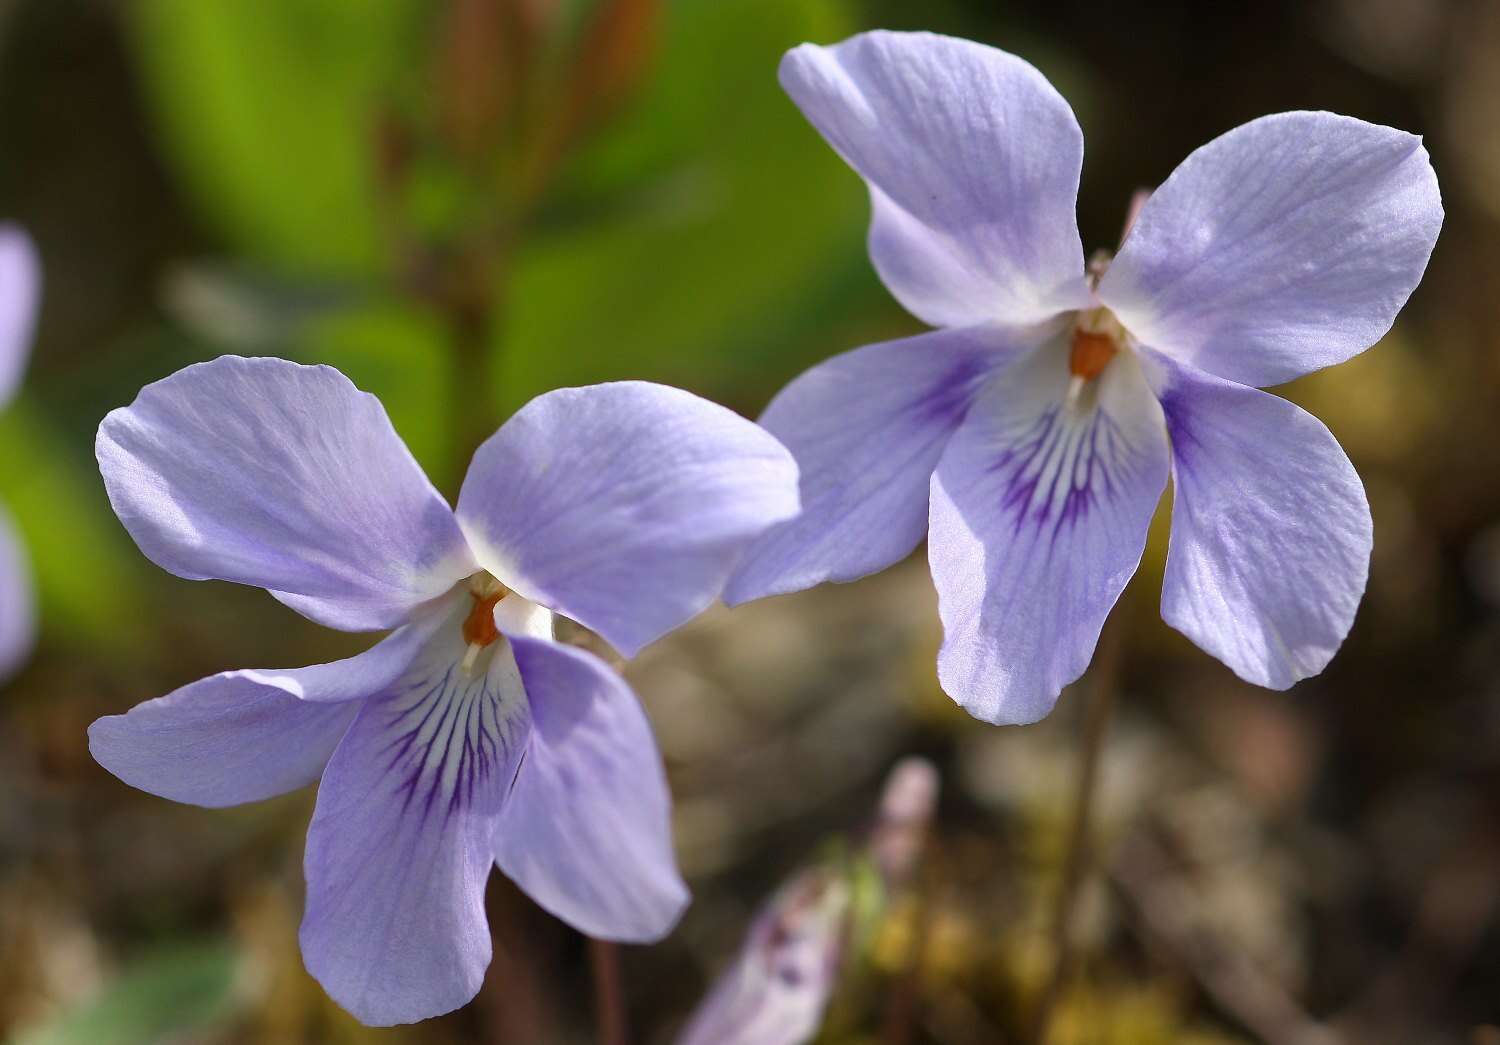 Image of Viola grypoceras A. Gray